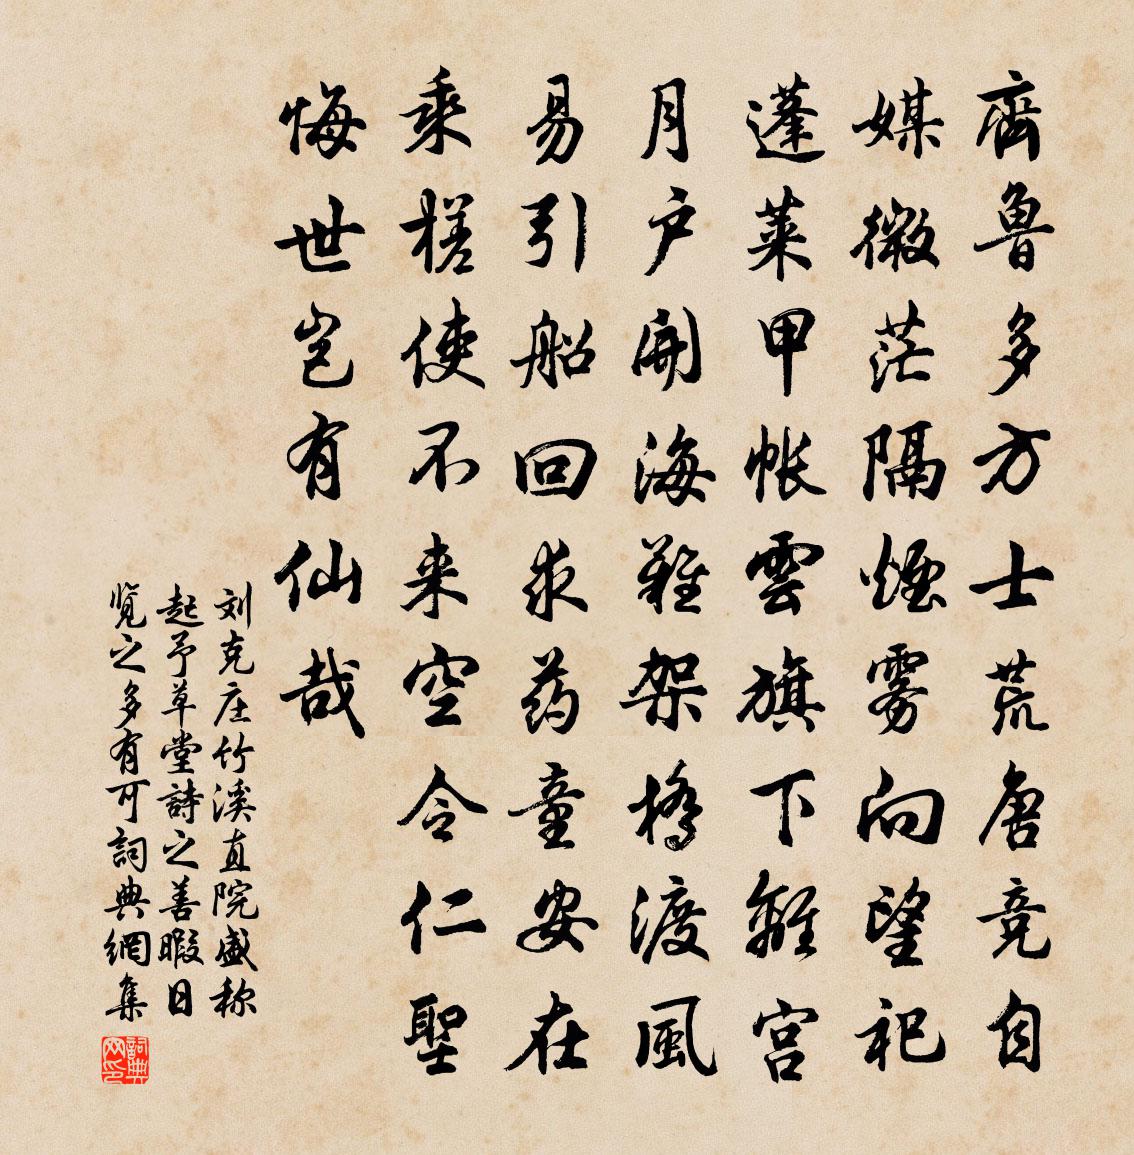 刘克庄竹溪直院盛称起予草堂诗之善暇日览之多有可书法作品欣赏